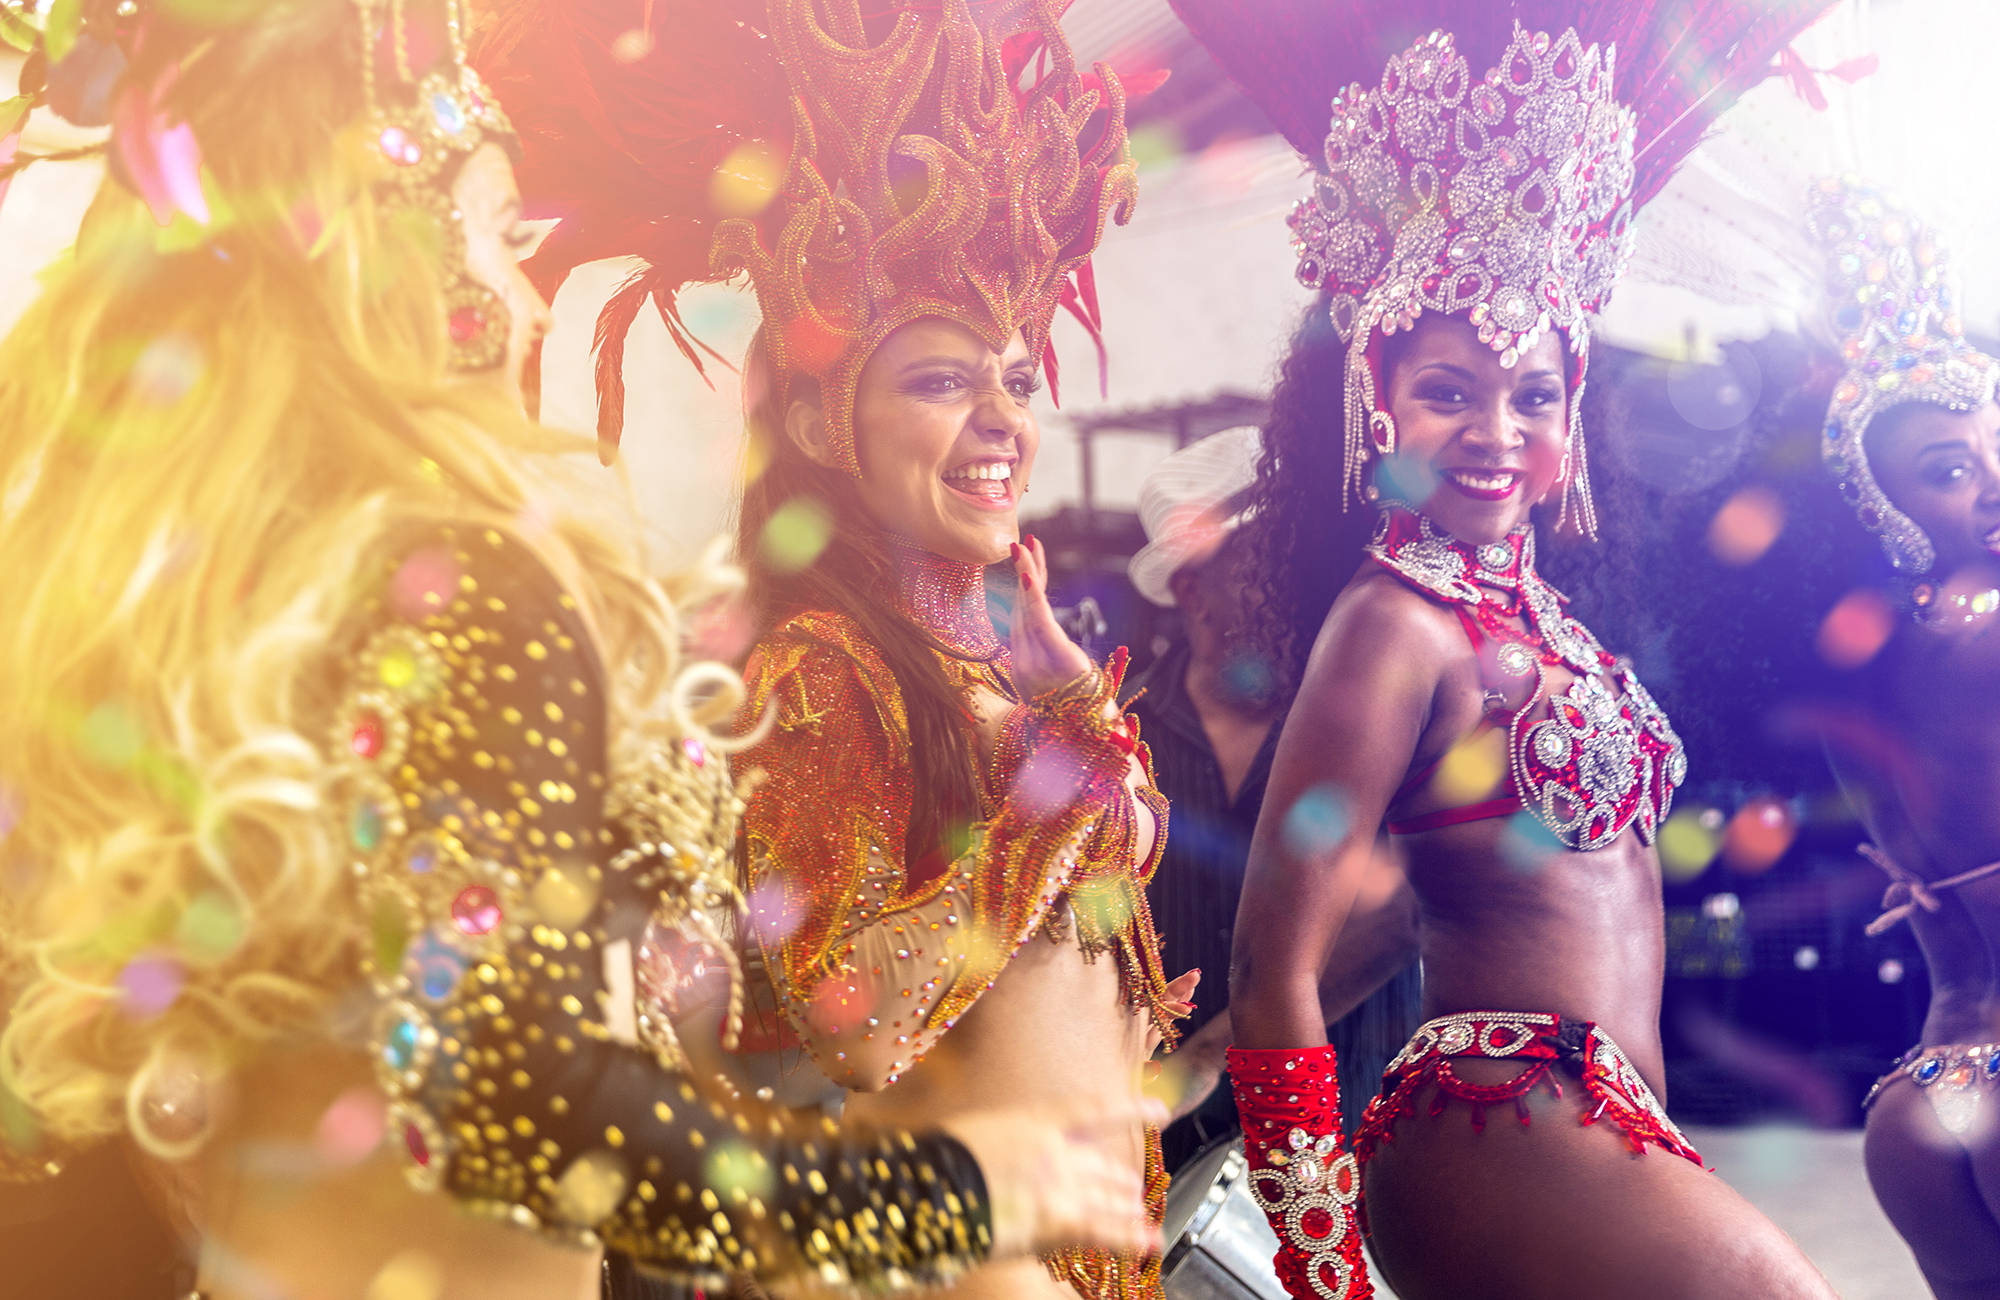 res till sydamerika och upplev karnevalen i rio, brasilien